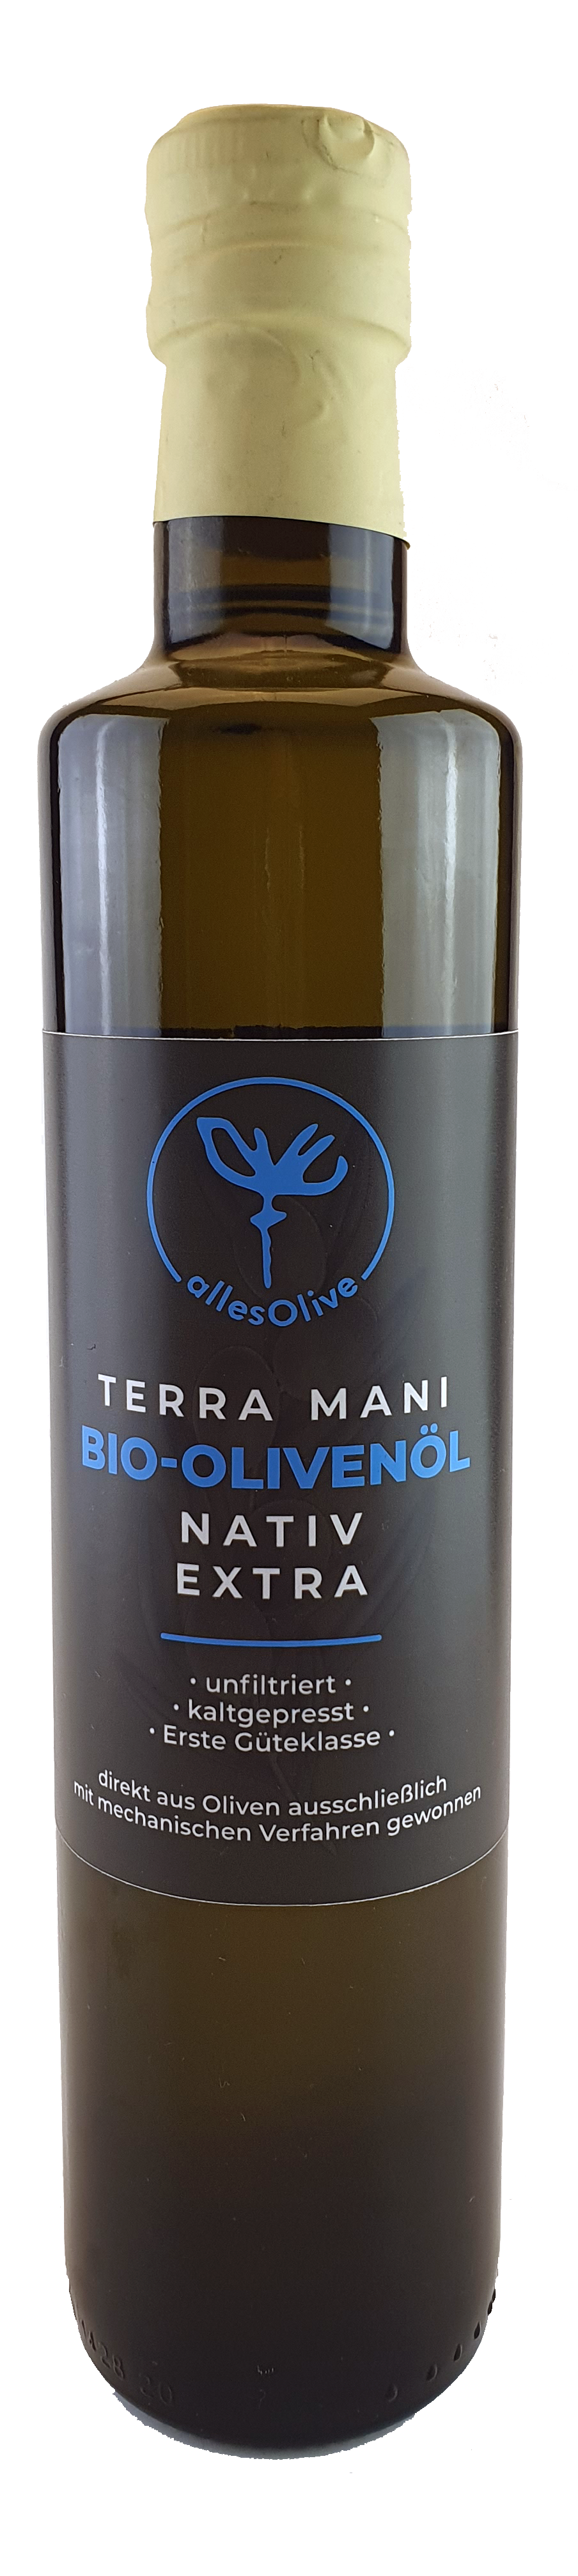 TERRA-MANI Huile d'olive extra vierge biologique native, non filtrée, bouteille de 500 ml.